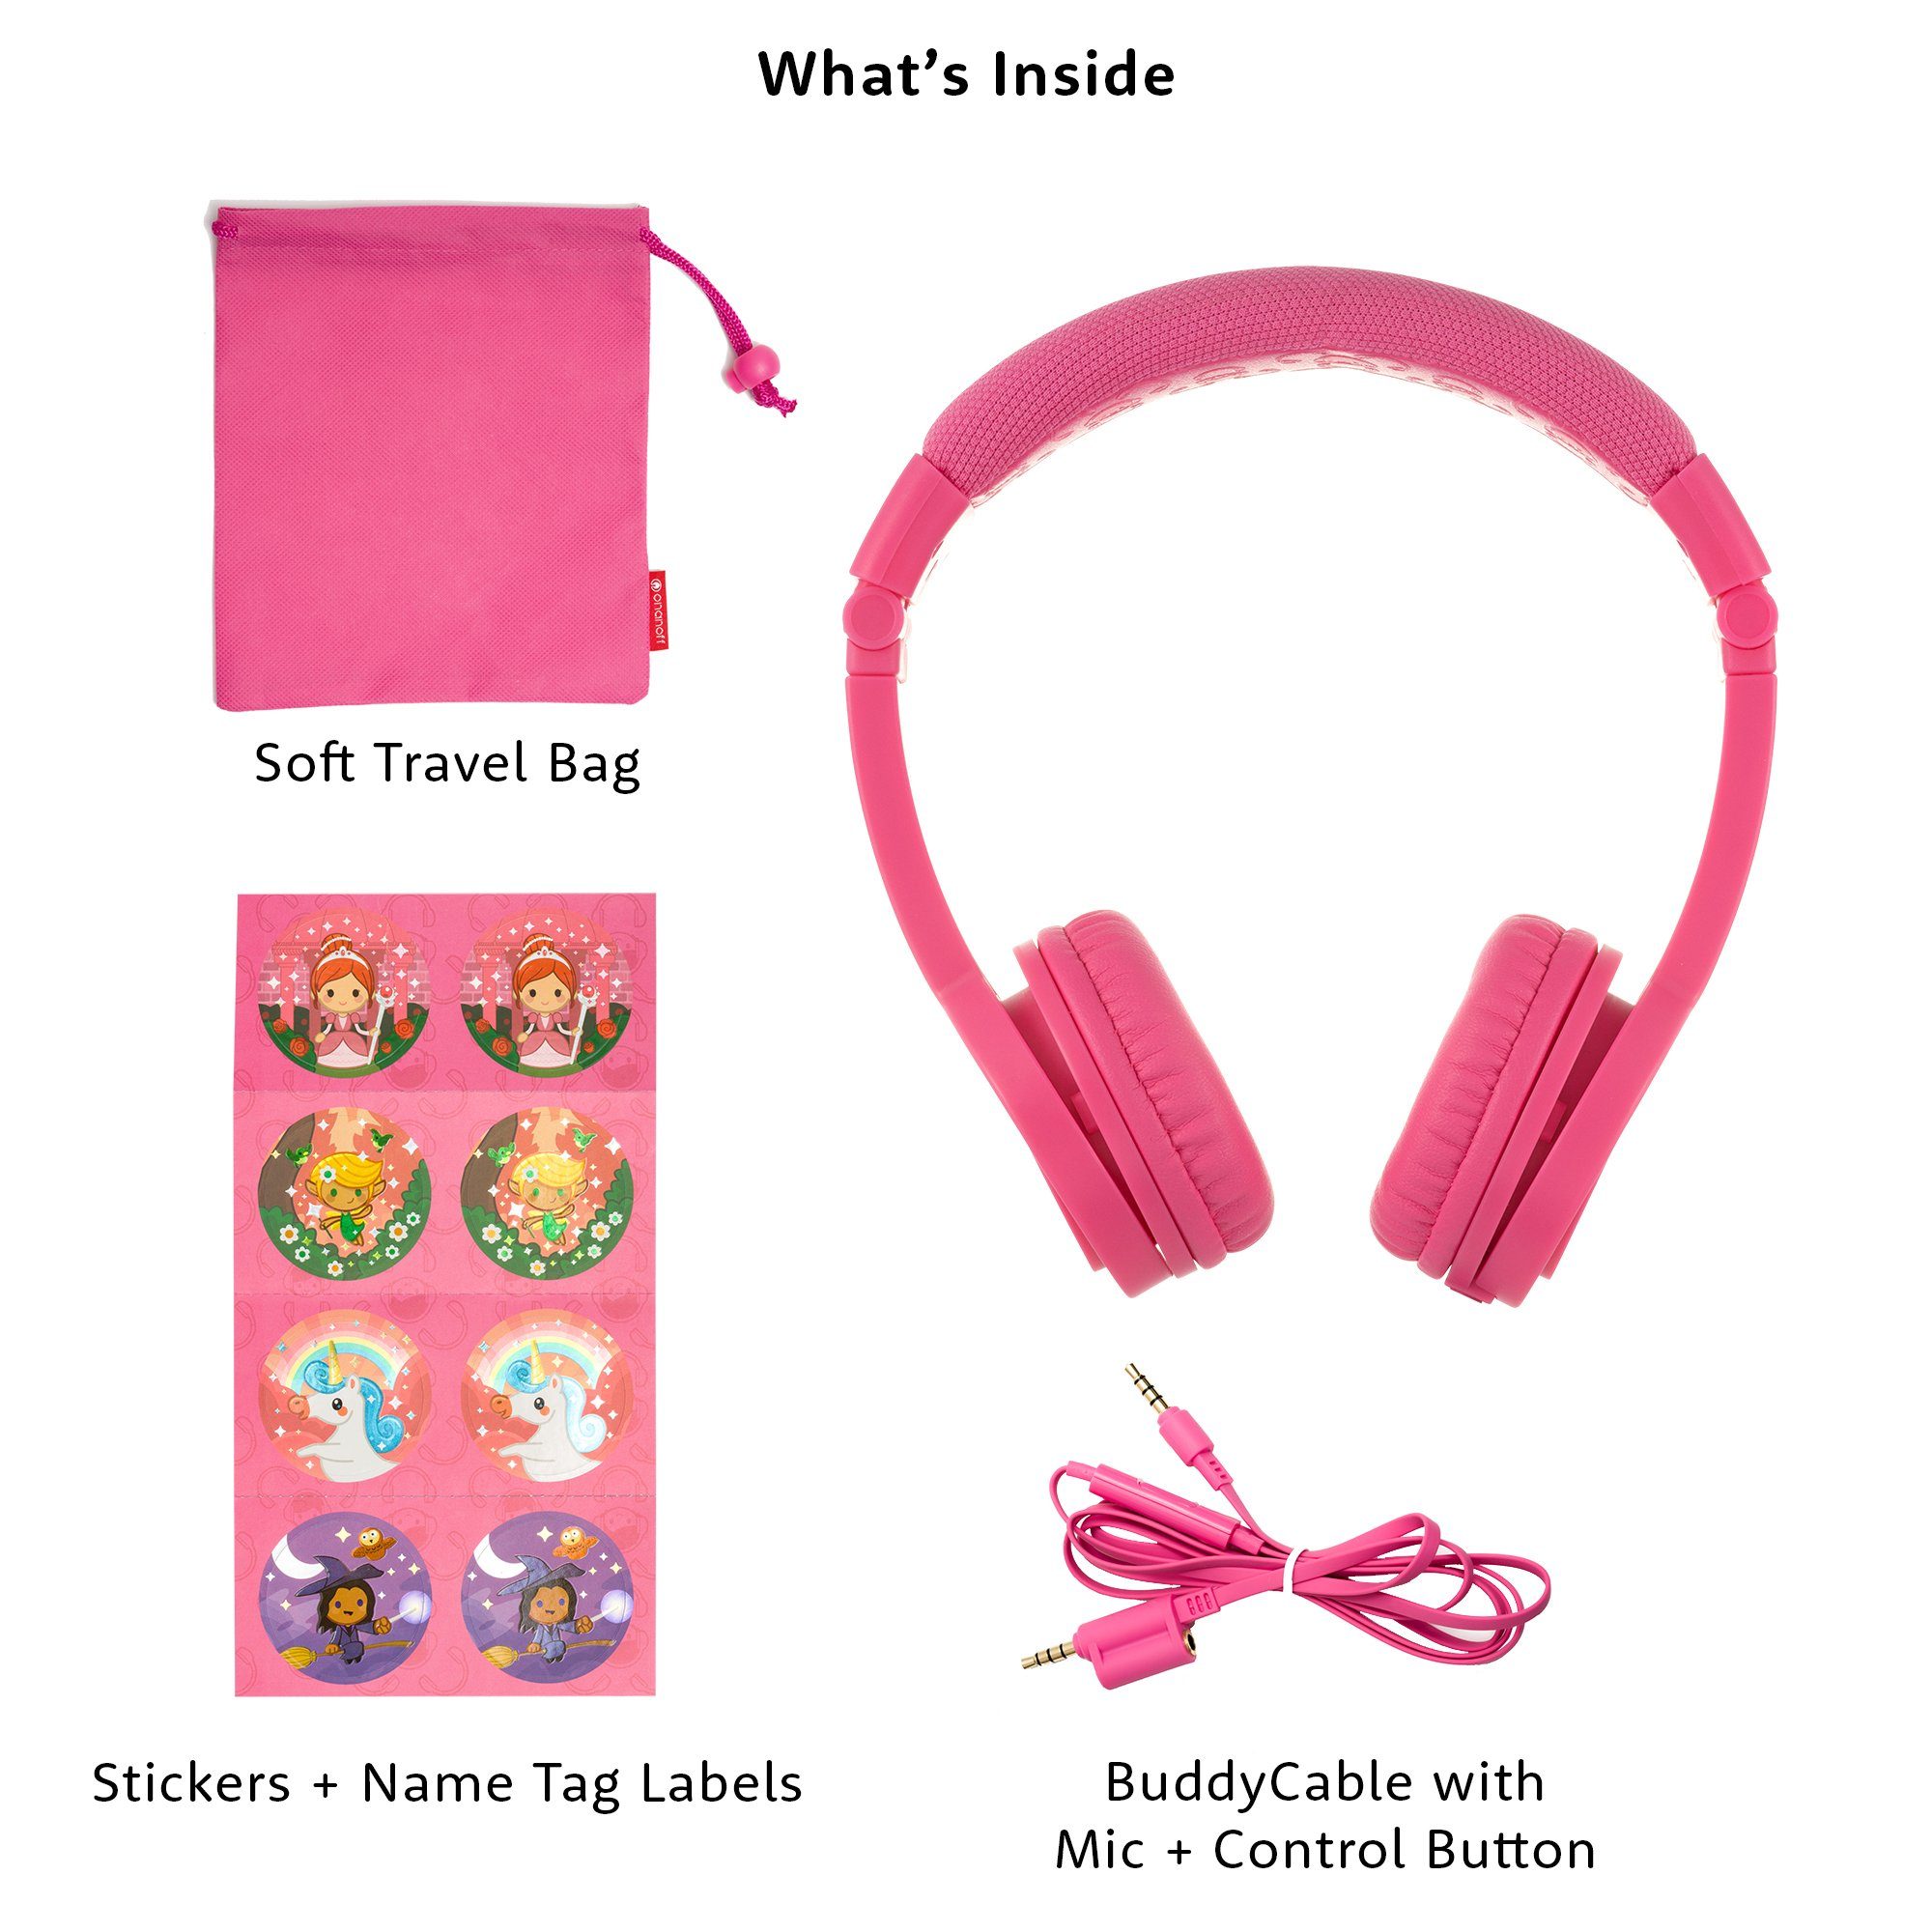 inkl. die buddyphones™ BuddyPhones integriertes extrem Kabel Produkte Kopfbügel, Kopfbügel, abnehmbar, verstellbarer Kinder-Kopfhörer onanoff Explore+ (kindersicher, klappbar, Reisetasche, coole sicheren hypoallergen) - strapazierfähig, gepolsterter dabei, Kinderkopfhörer Lautstärkebegrenzung, Sticker pink kinderfreundlich, safeAudio, Mikrofon,